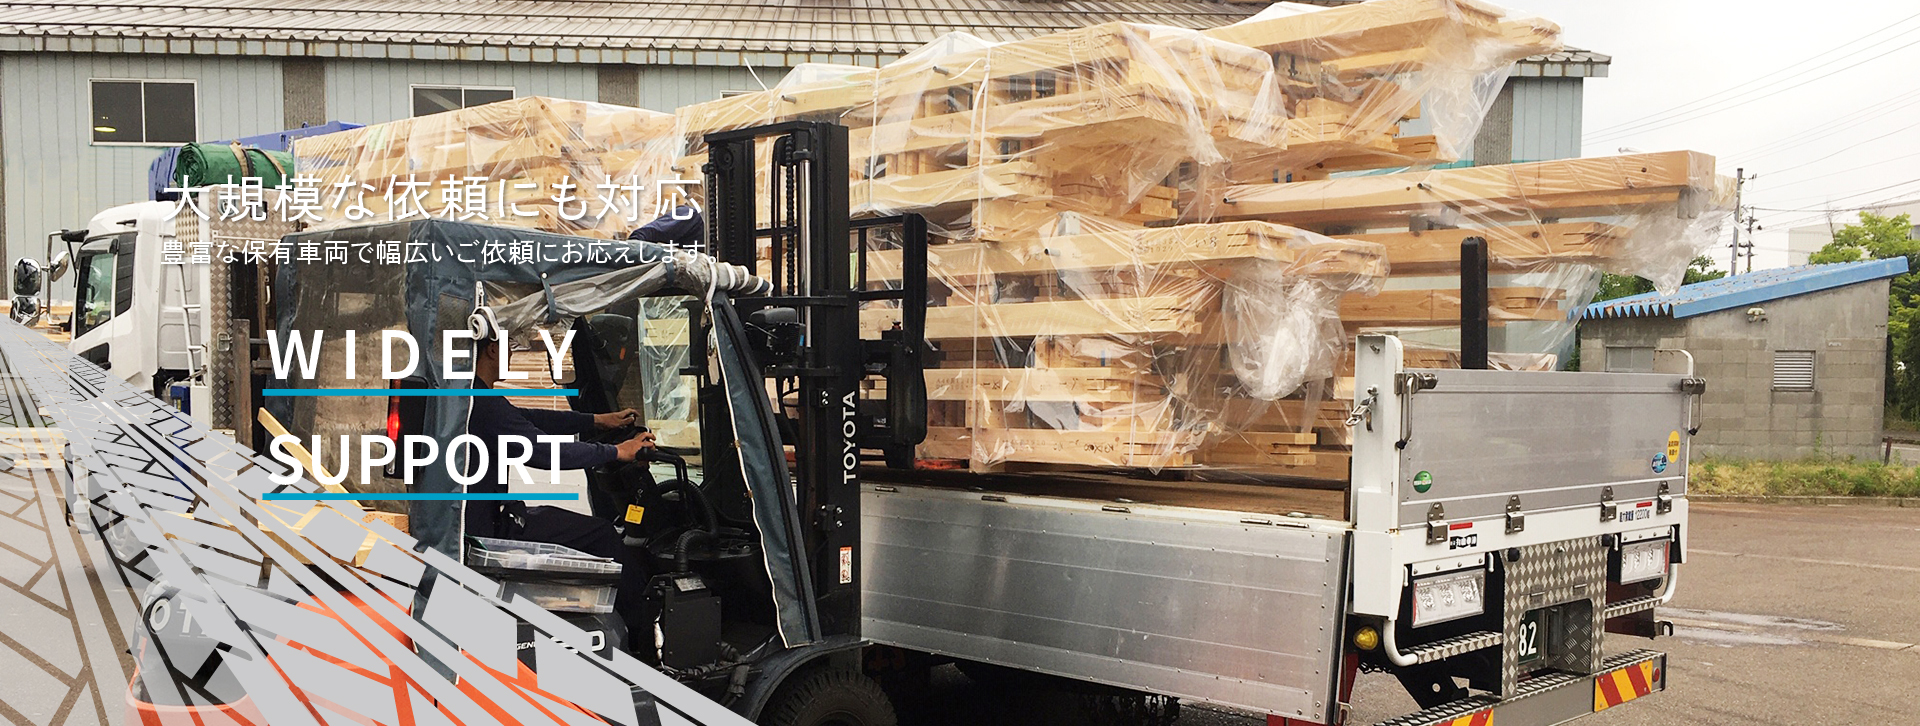 一般貨物から重量物輸送まで、新潟県の運送業者ワタナベトランスポート